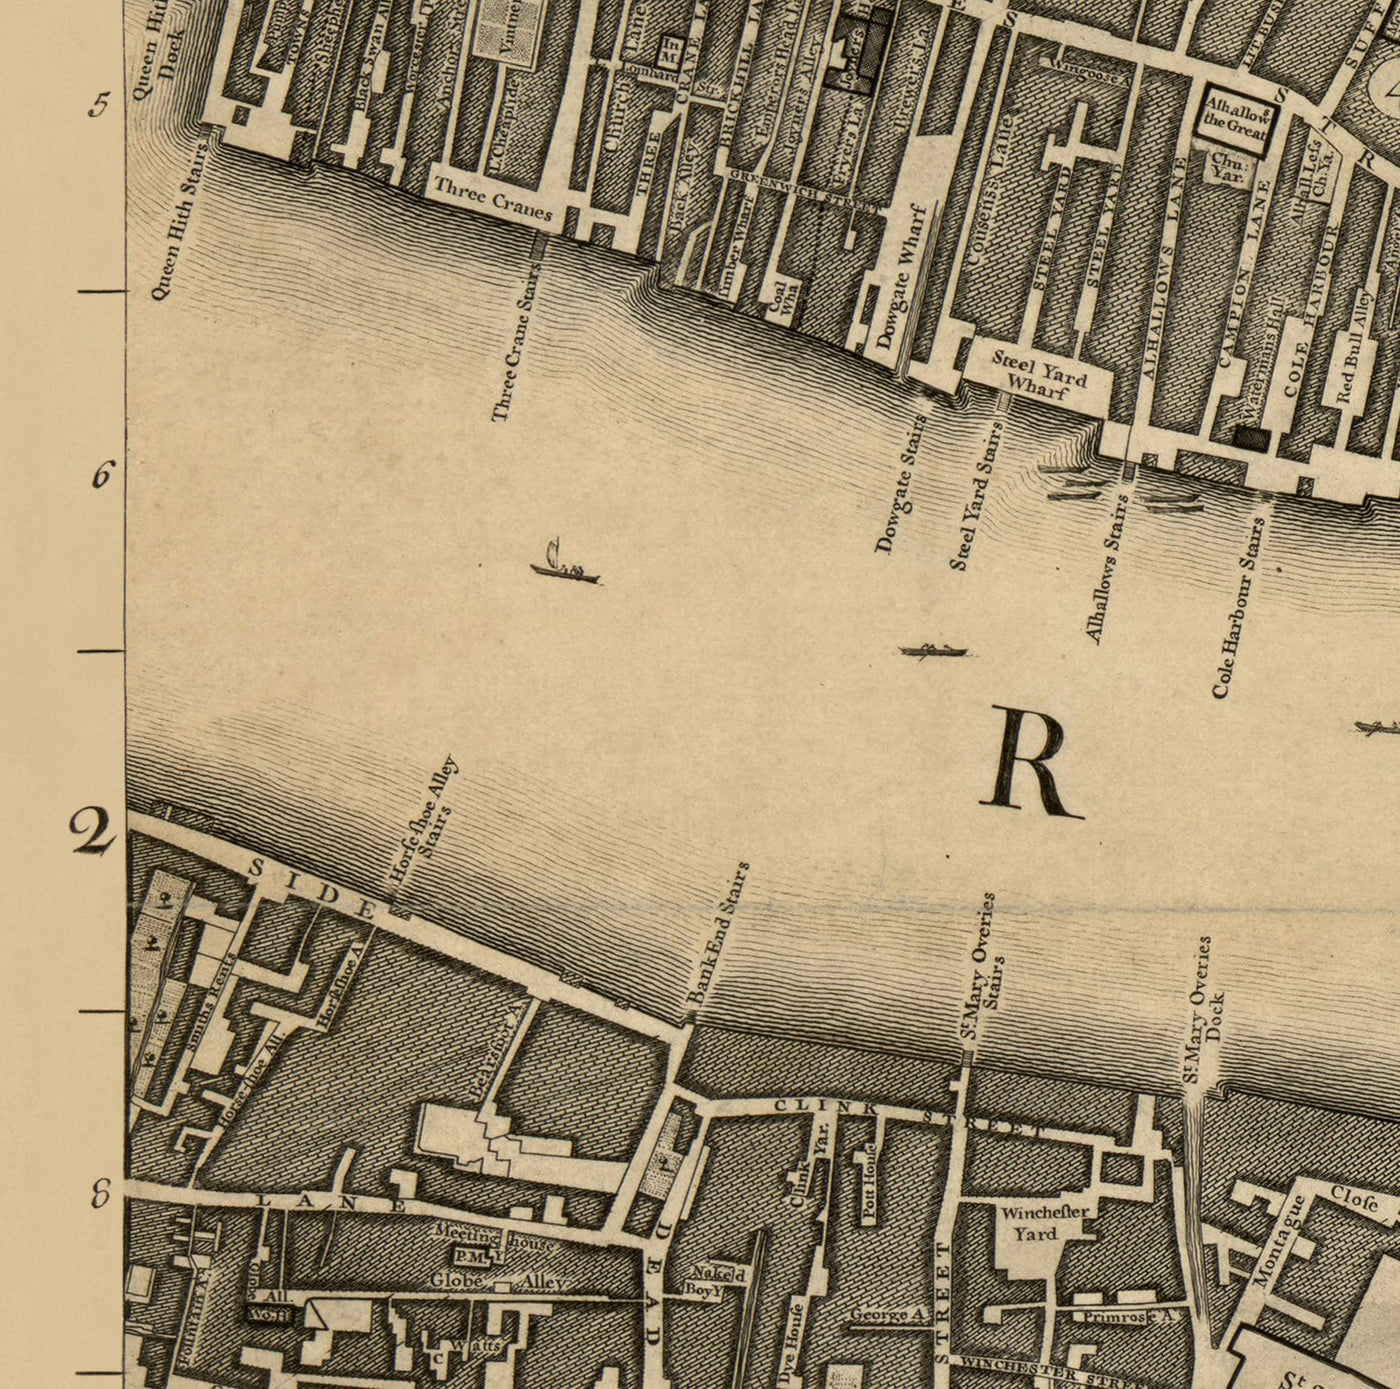 Ancienne carte de Londres, 1746 par John Rocque, E2 - London Bridge, Ville de Londres, Borough, Bermondsey, Monument, Cannon, Banque